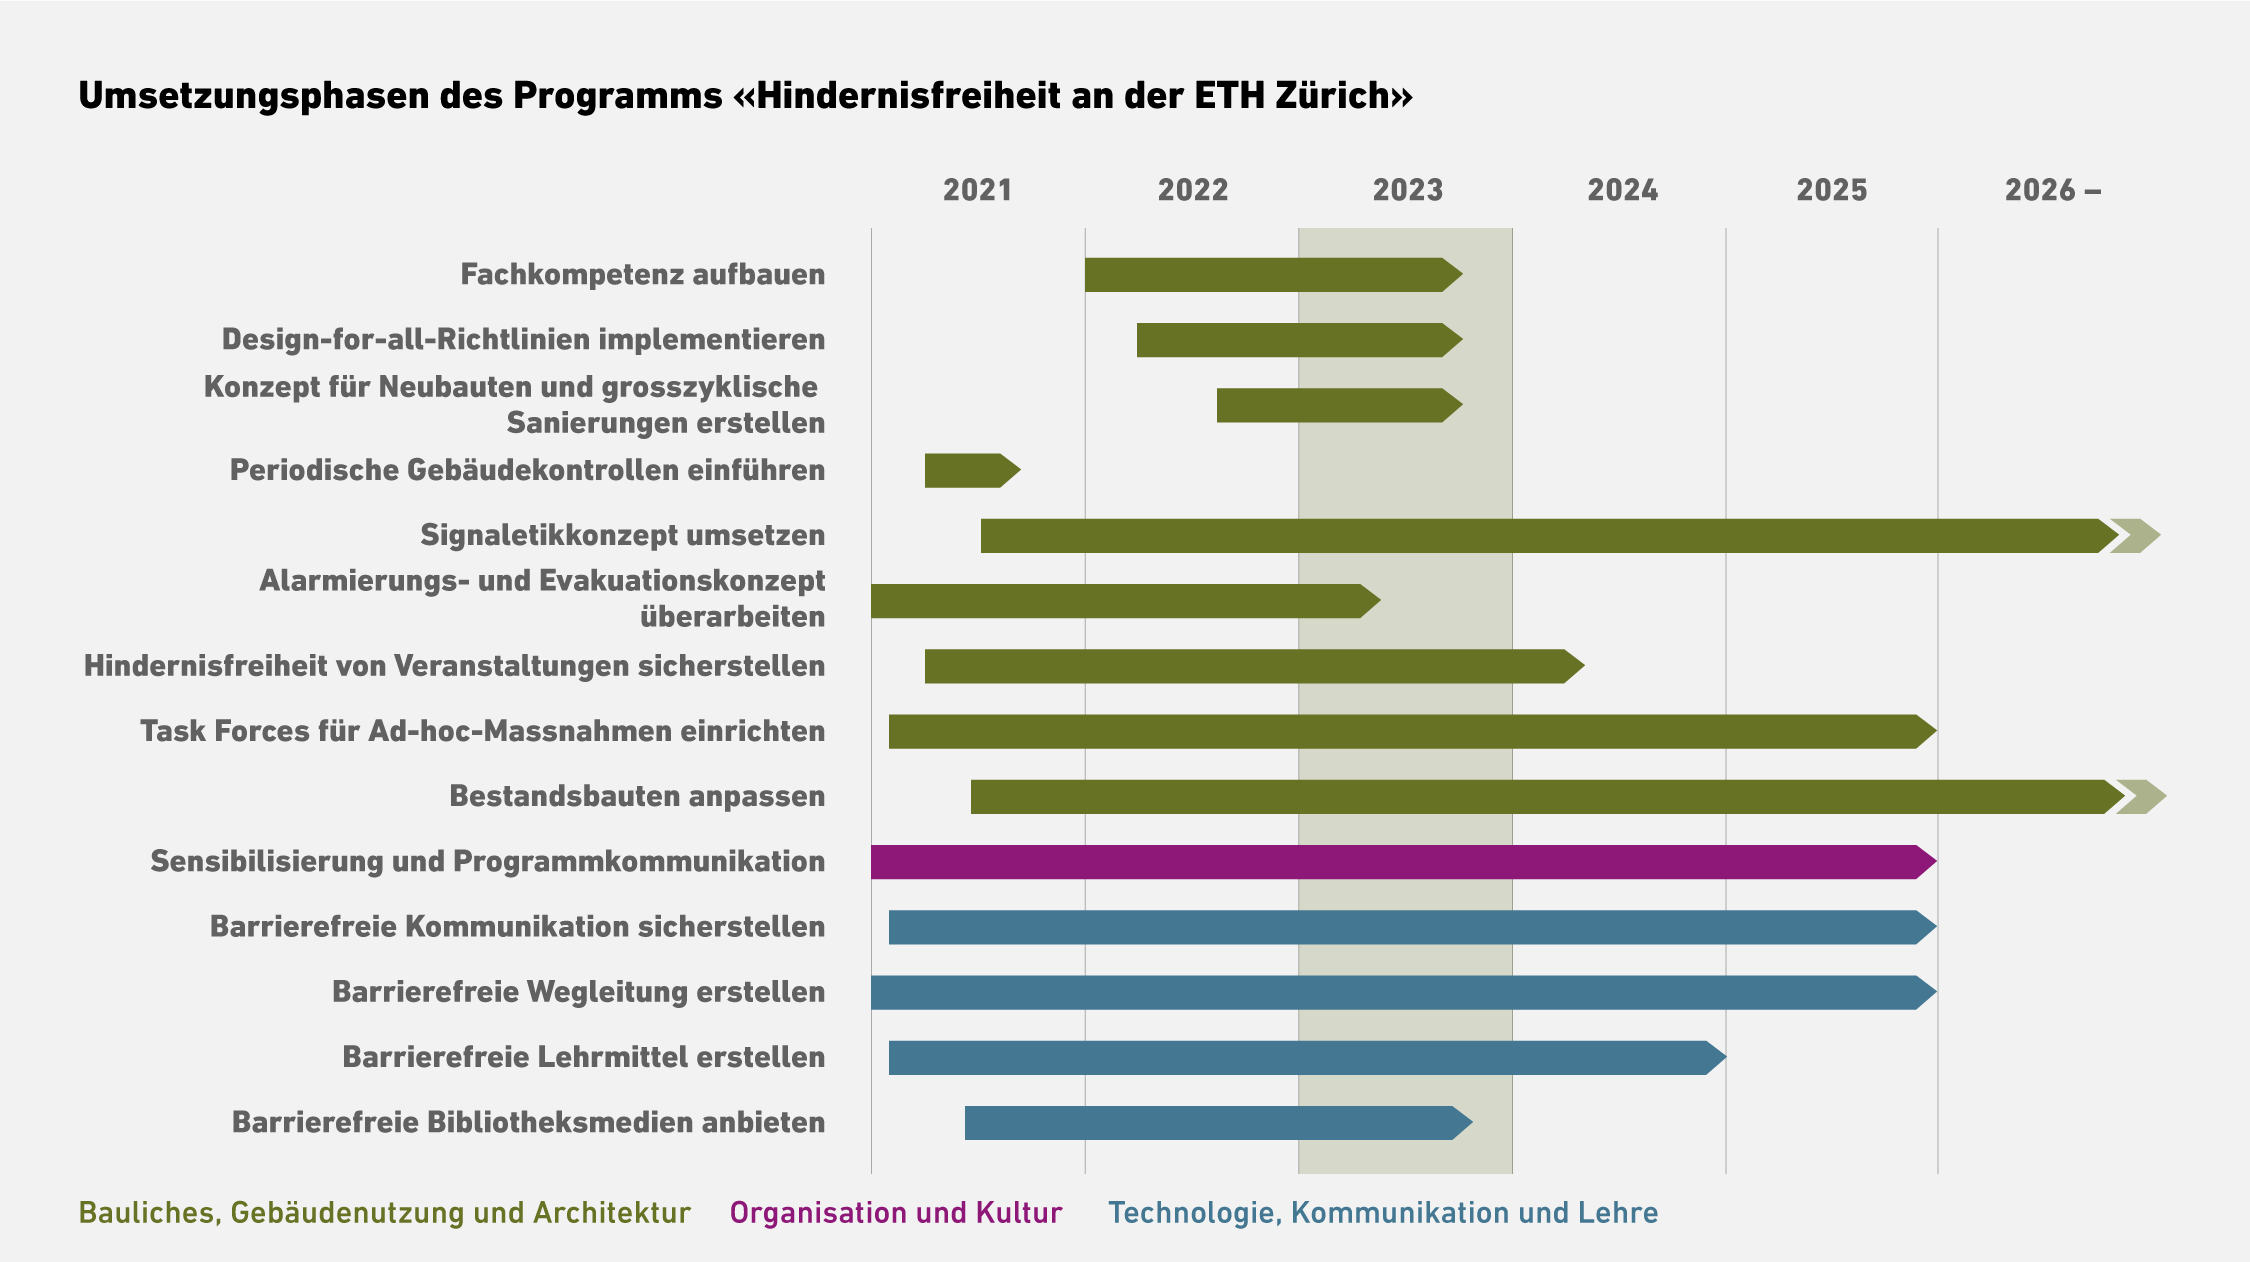 Vergrösserte Ansicht: Tabelle welche den Umsetzungszeitraum des Programms "Hindernisfreiheit an der ETH Zürich" je nach Bereich zeigt.